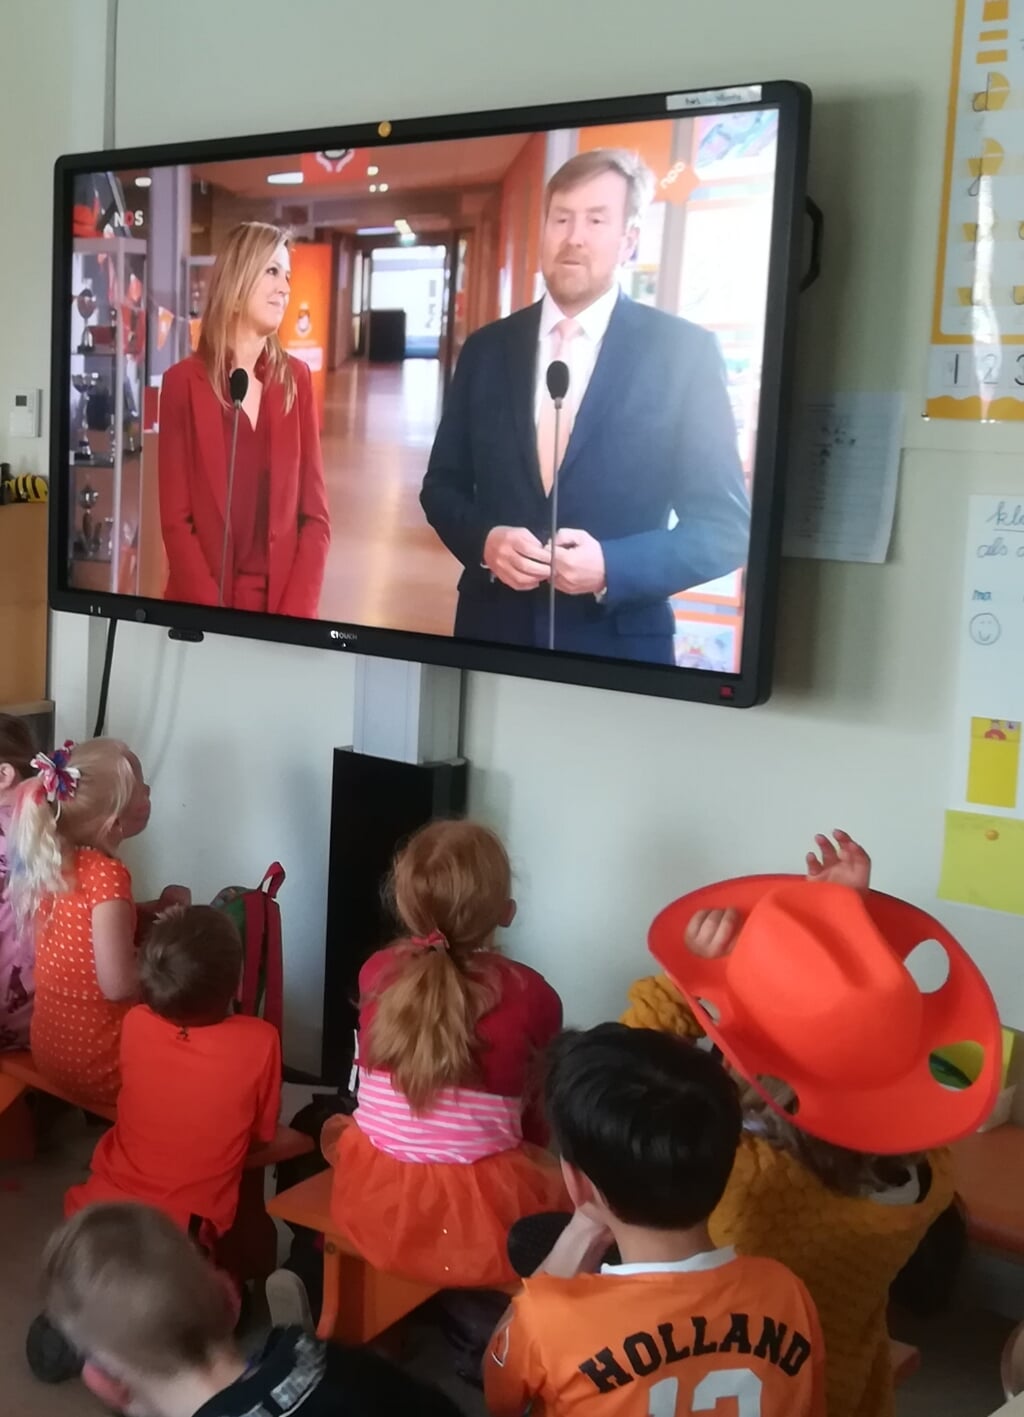 Kijken naar de livestream met koning Willem-Alexander. Foto: PR